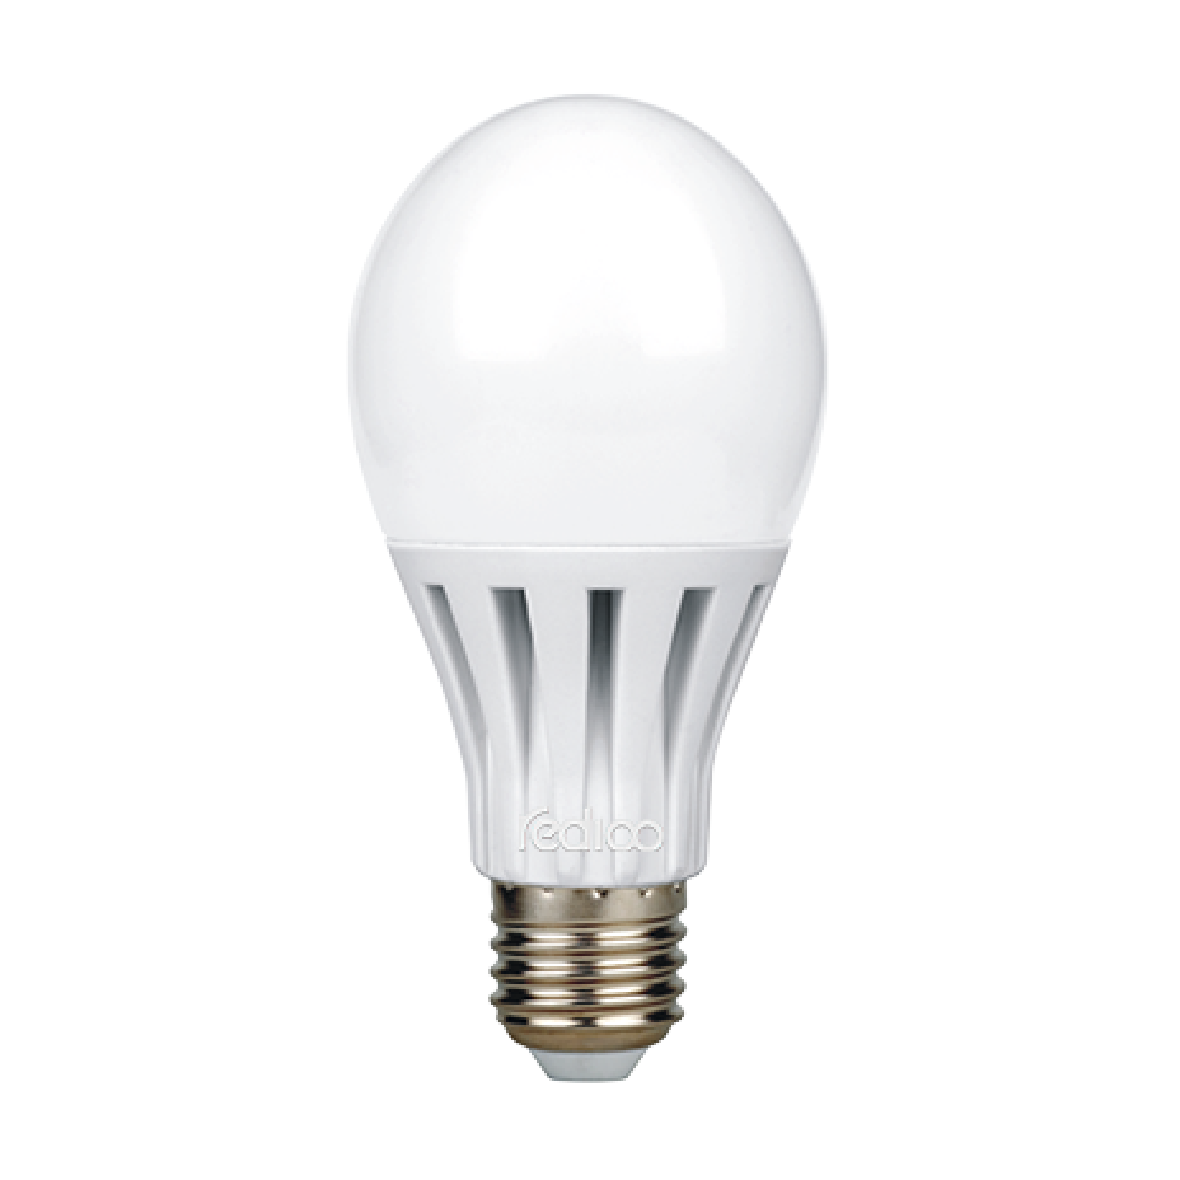 P1 (16-20w) Bulb